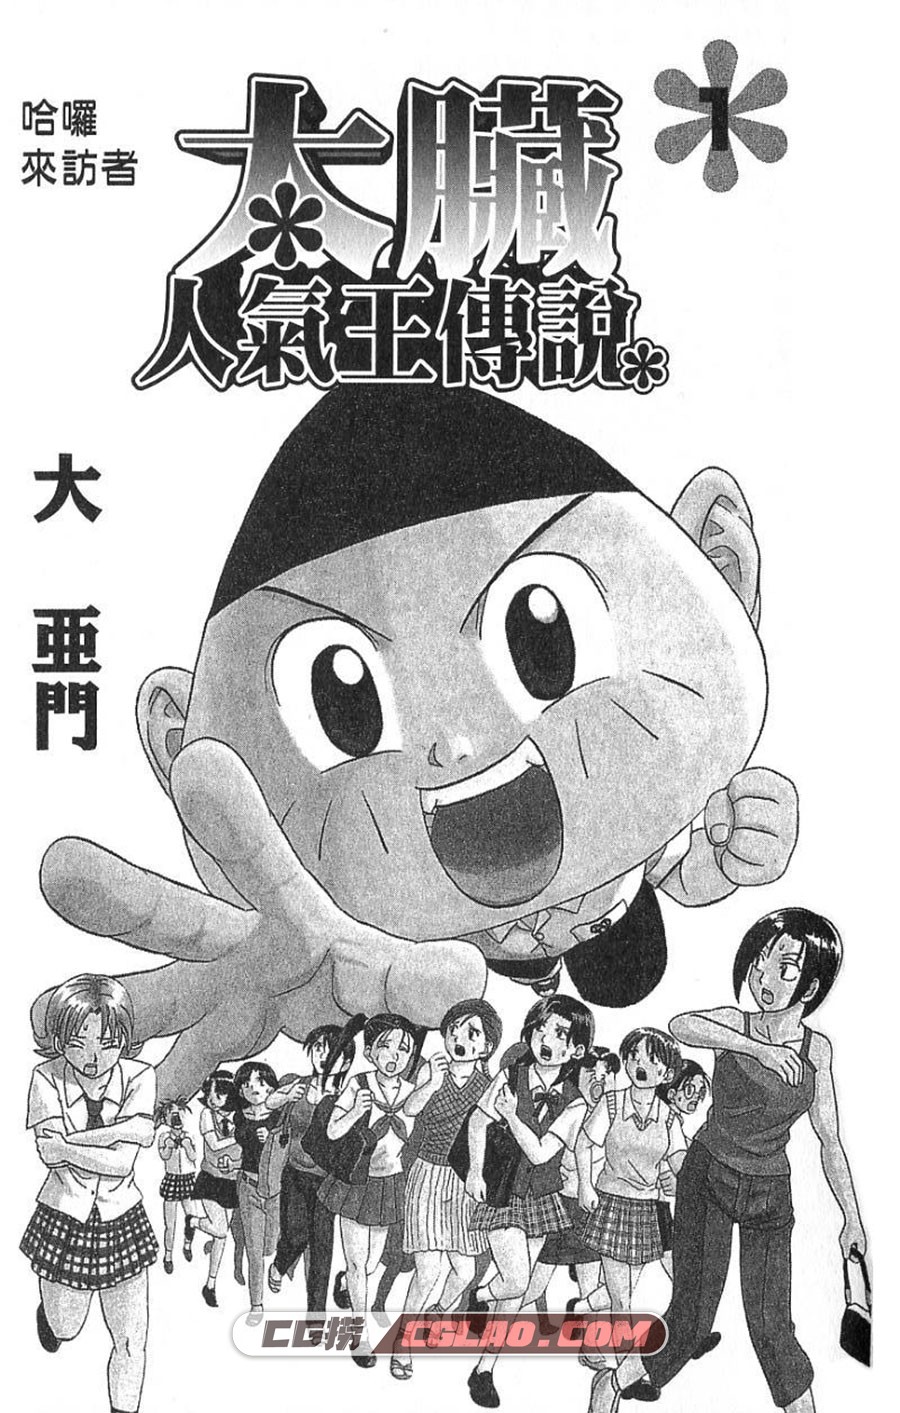 太脏人气王传说 大亚门 1-8卷 漫画完结全集下载 百度网盘,01-001.jpg